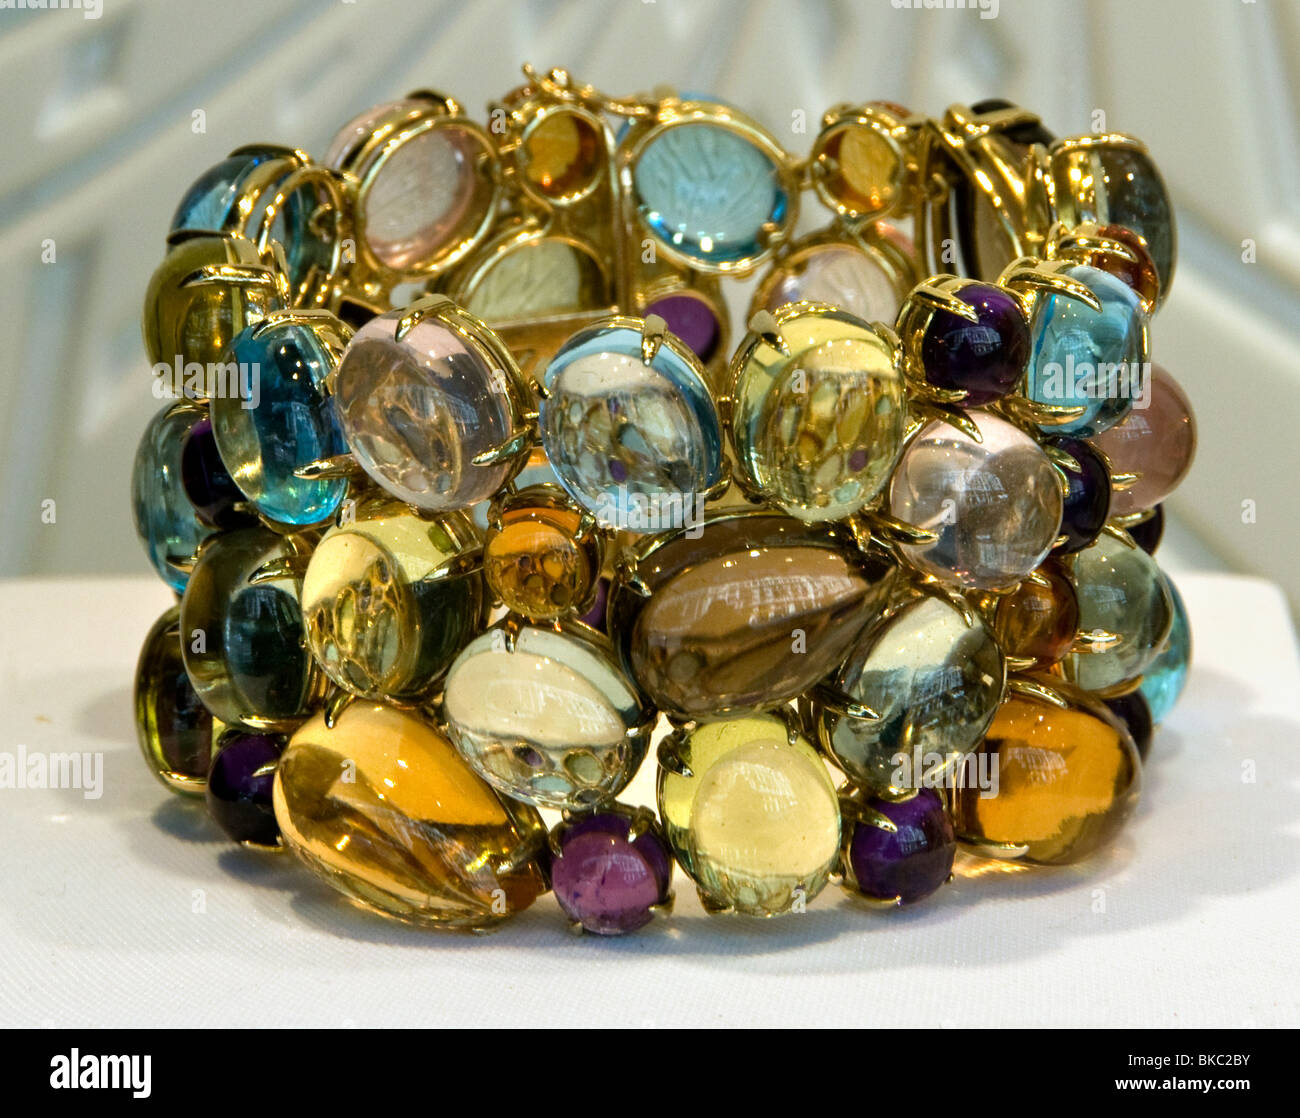 Madrid Gran Via Grassy bracelet jeweler Spain Spanish Stock Photo